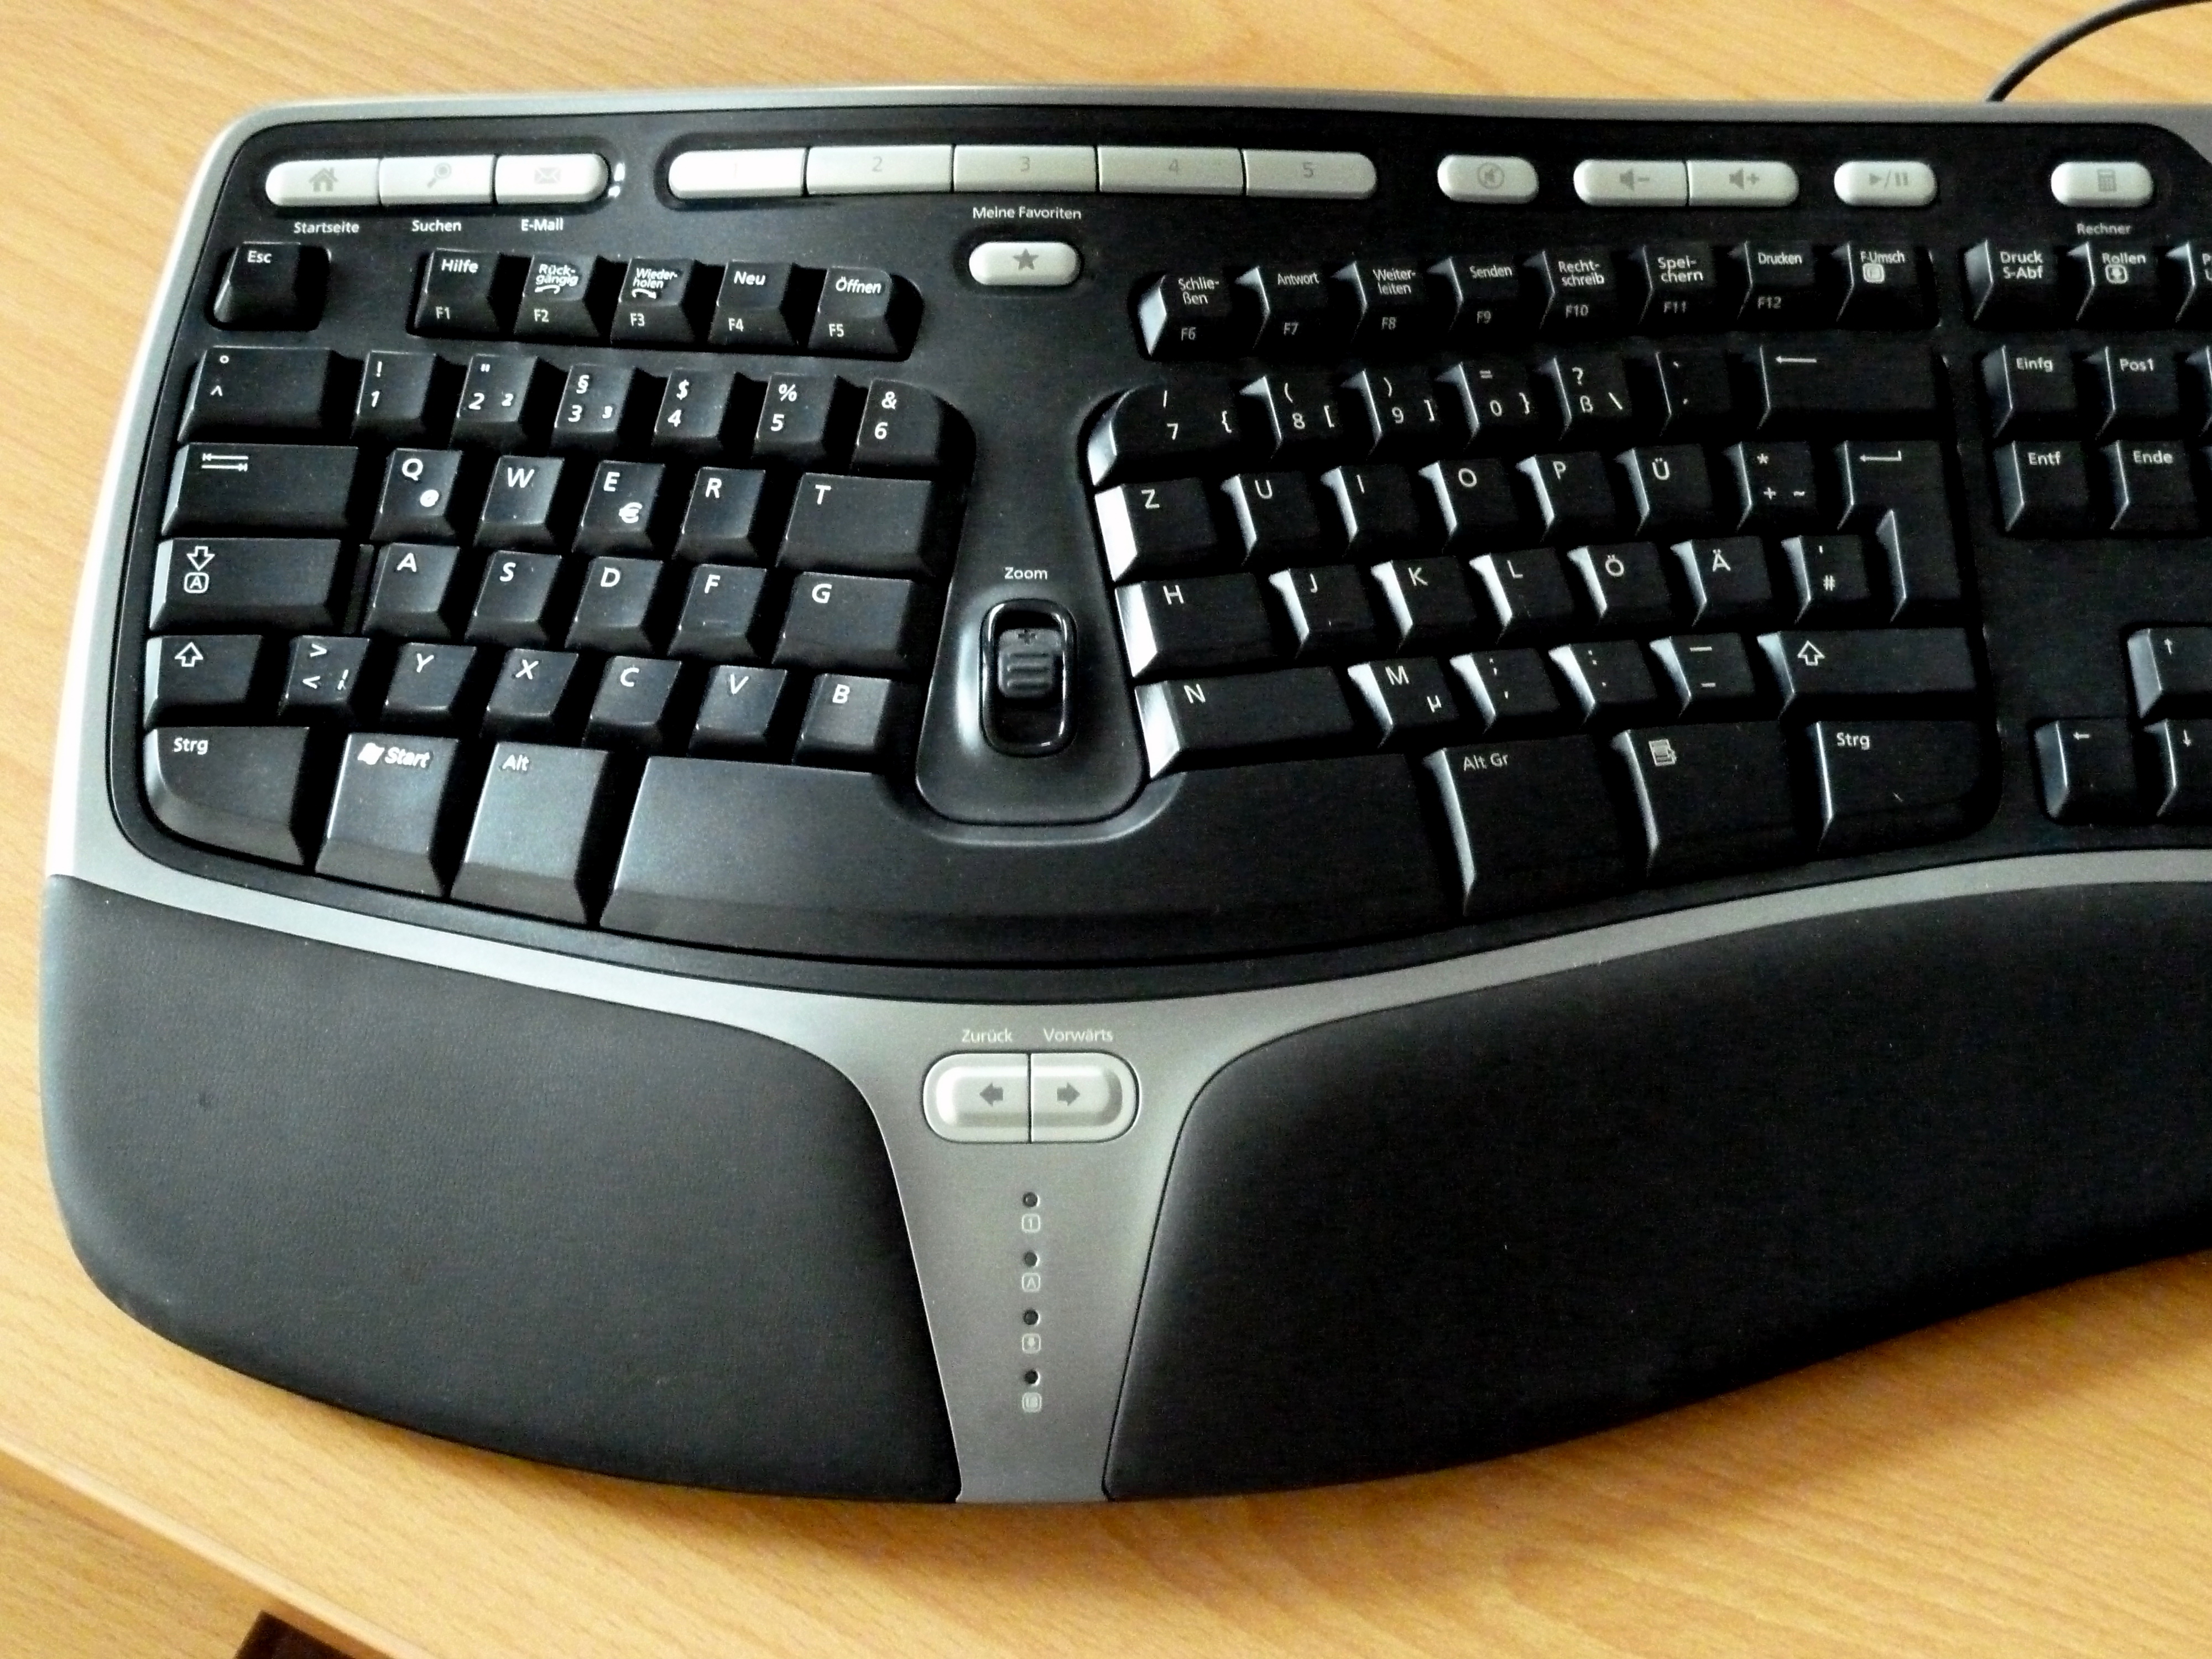 Abbild einer ergonomische PC-Tastatur